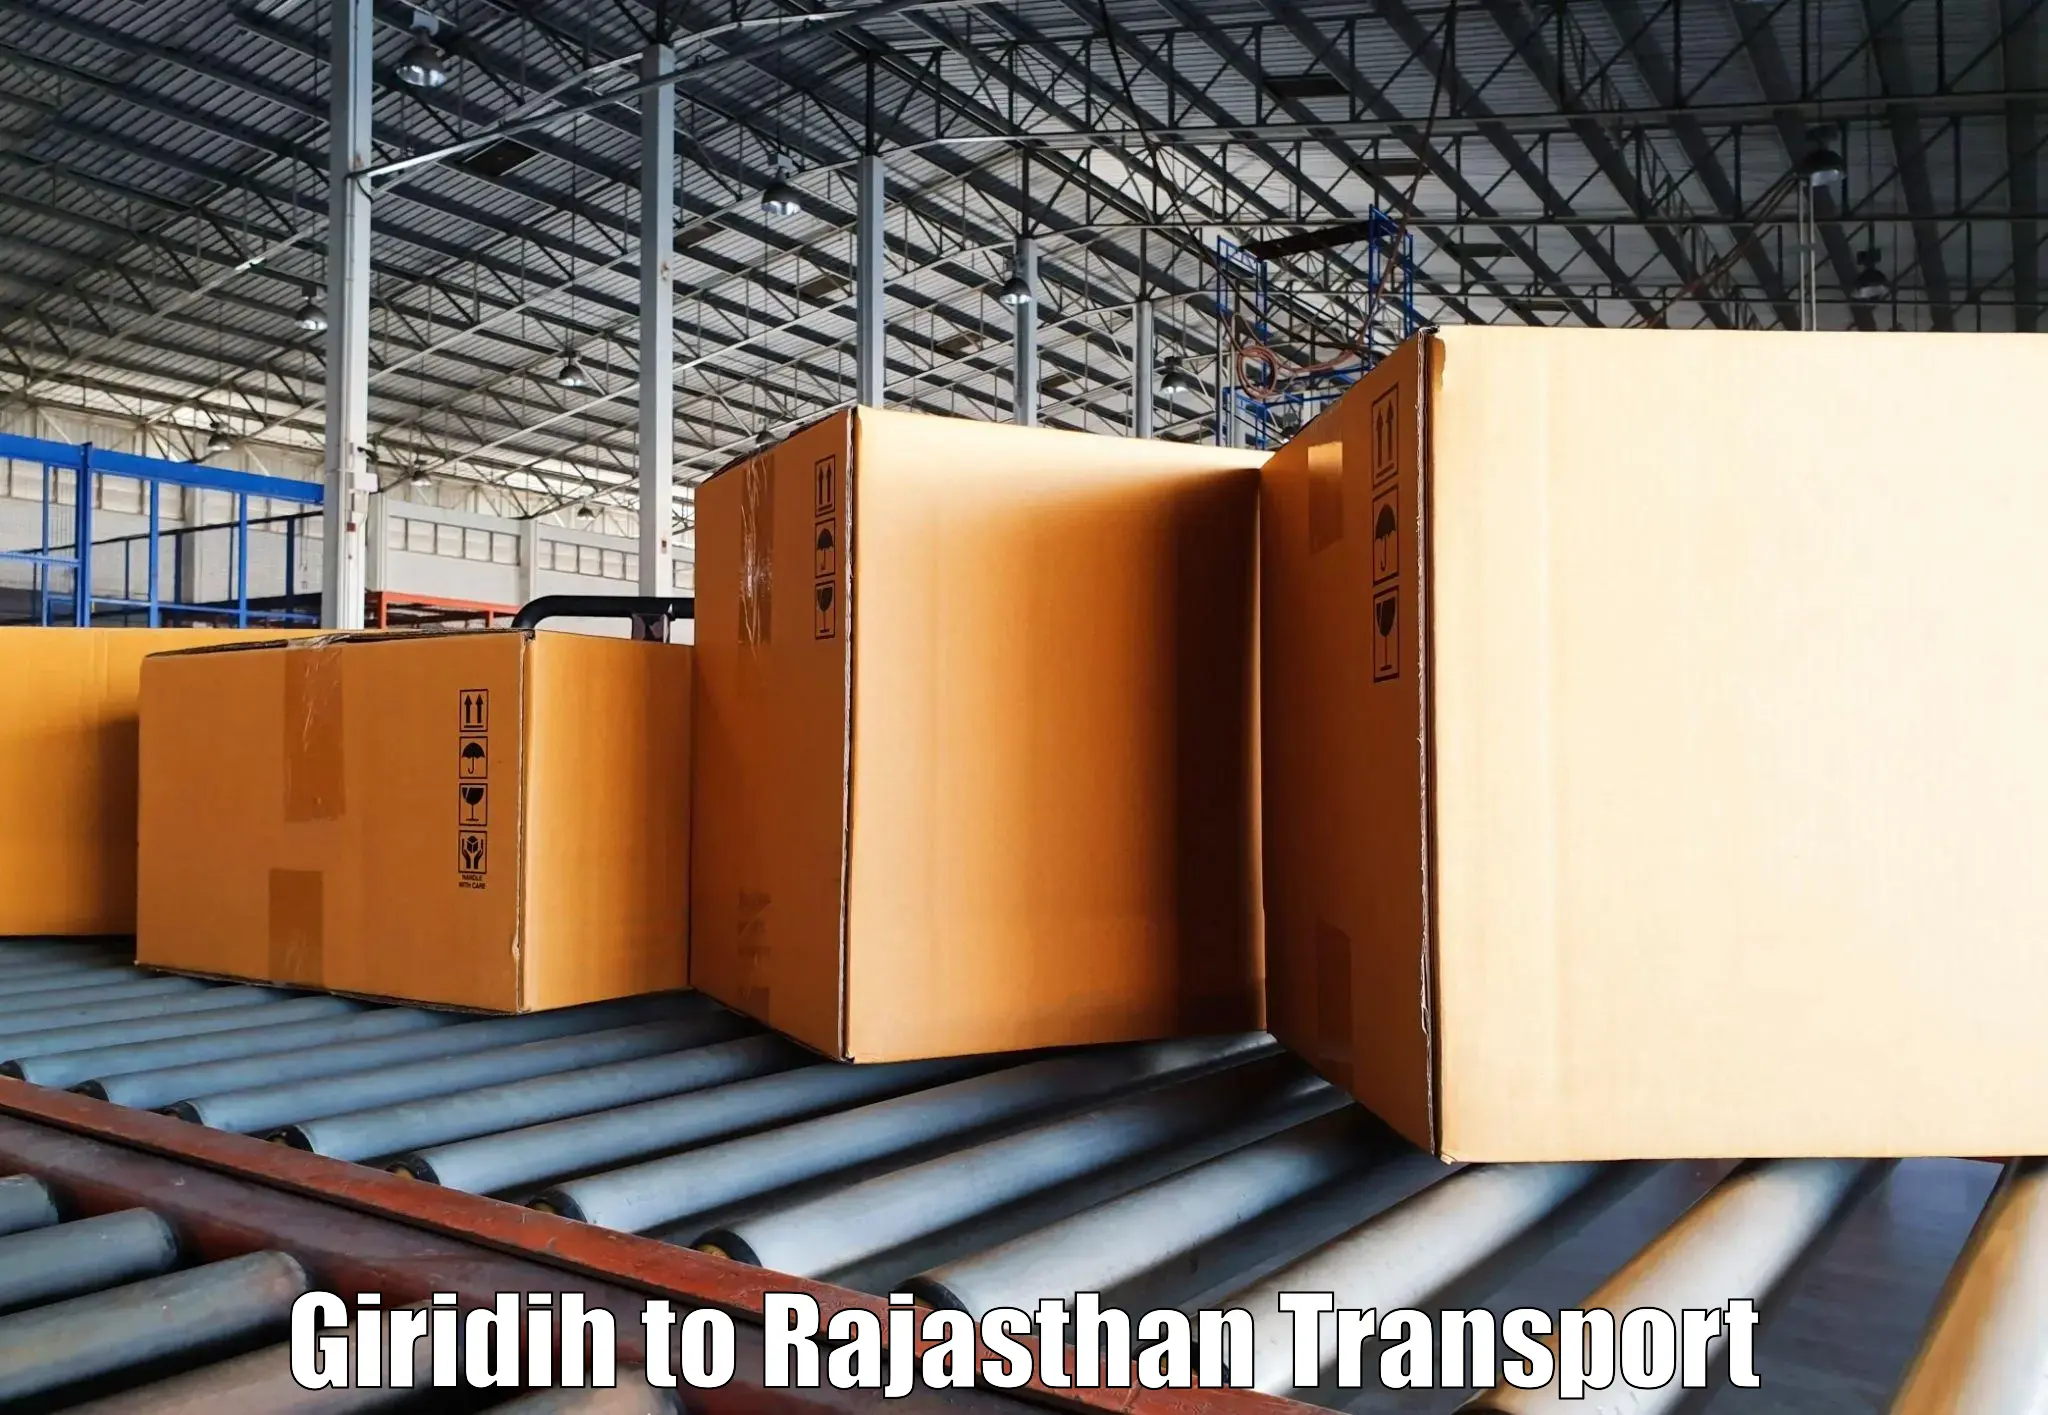 Daily transport service Giridih to Chhoti Sadri